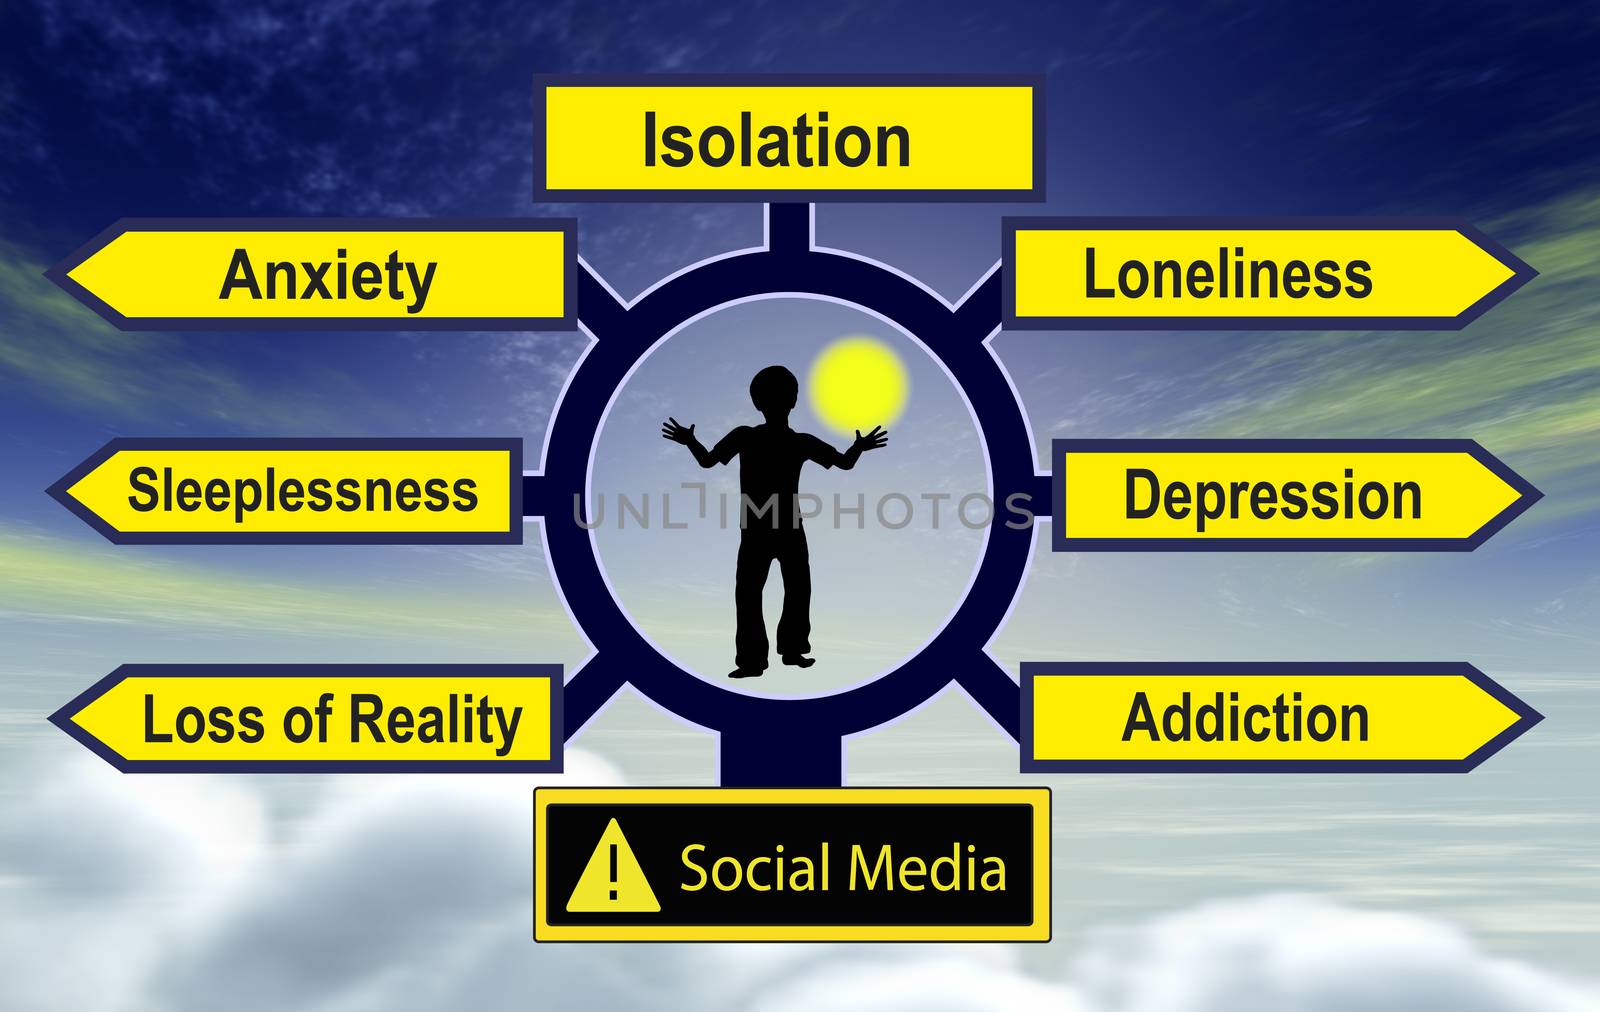 Social Media harm mental health by Bambara